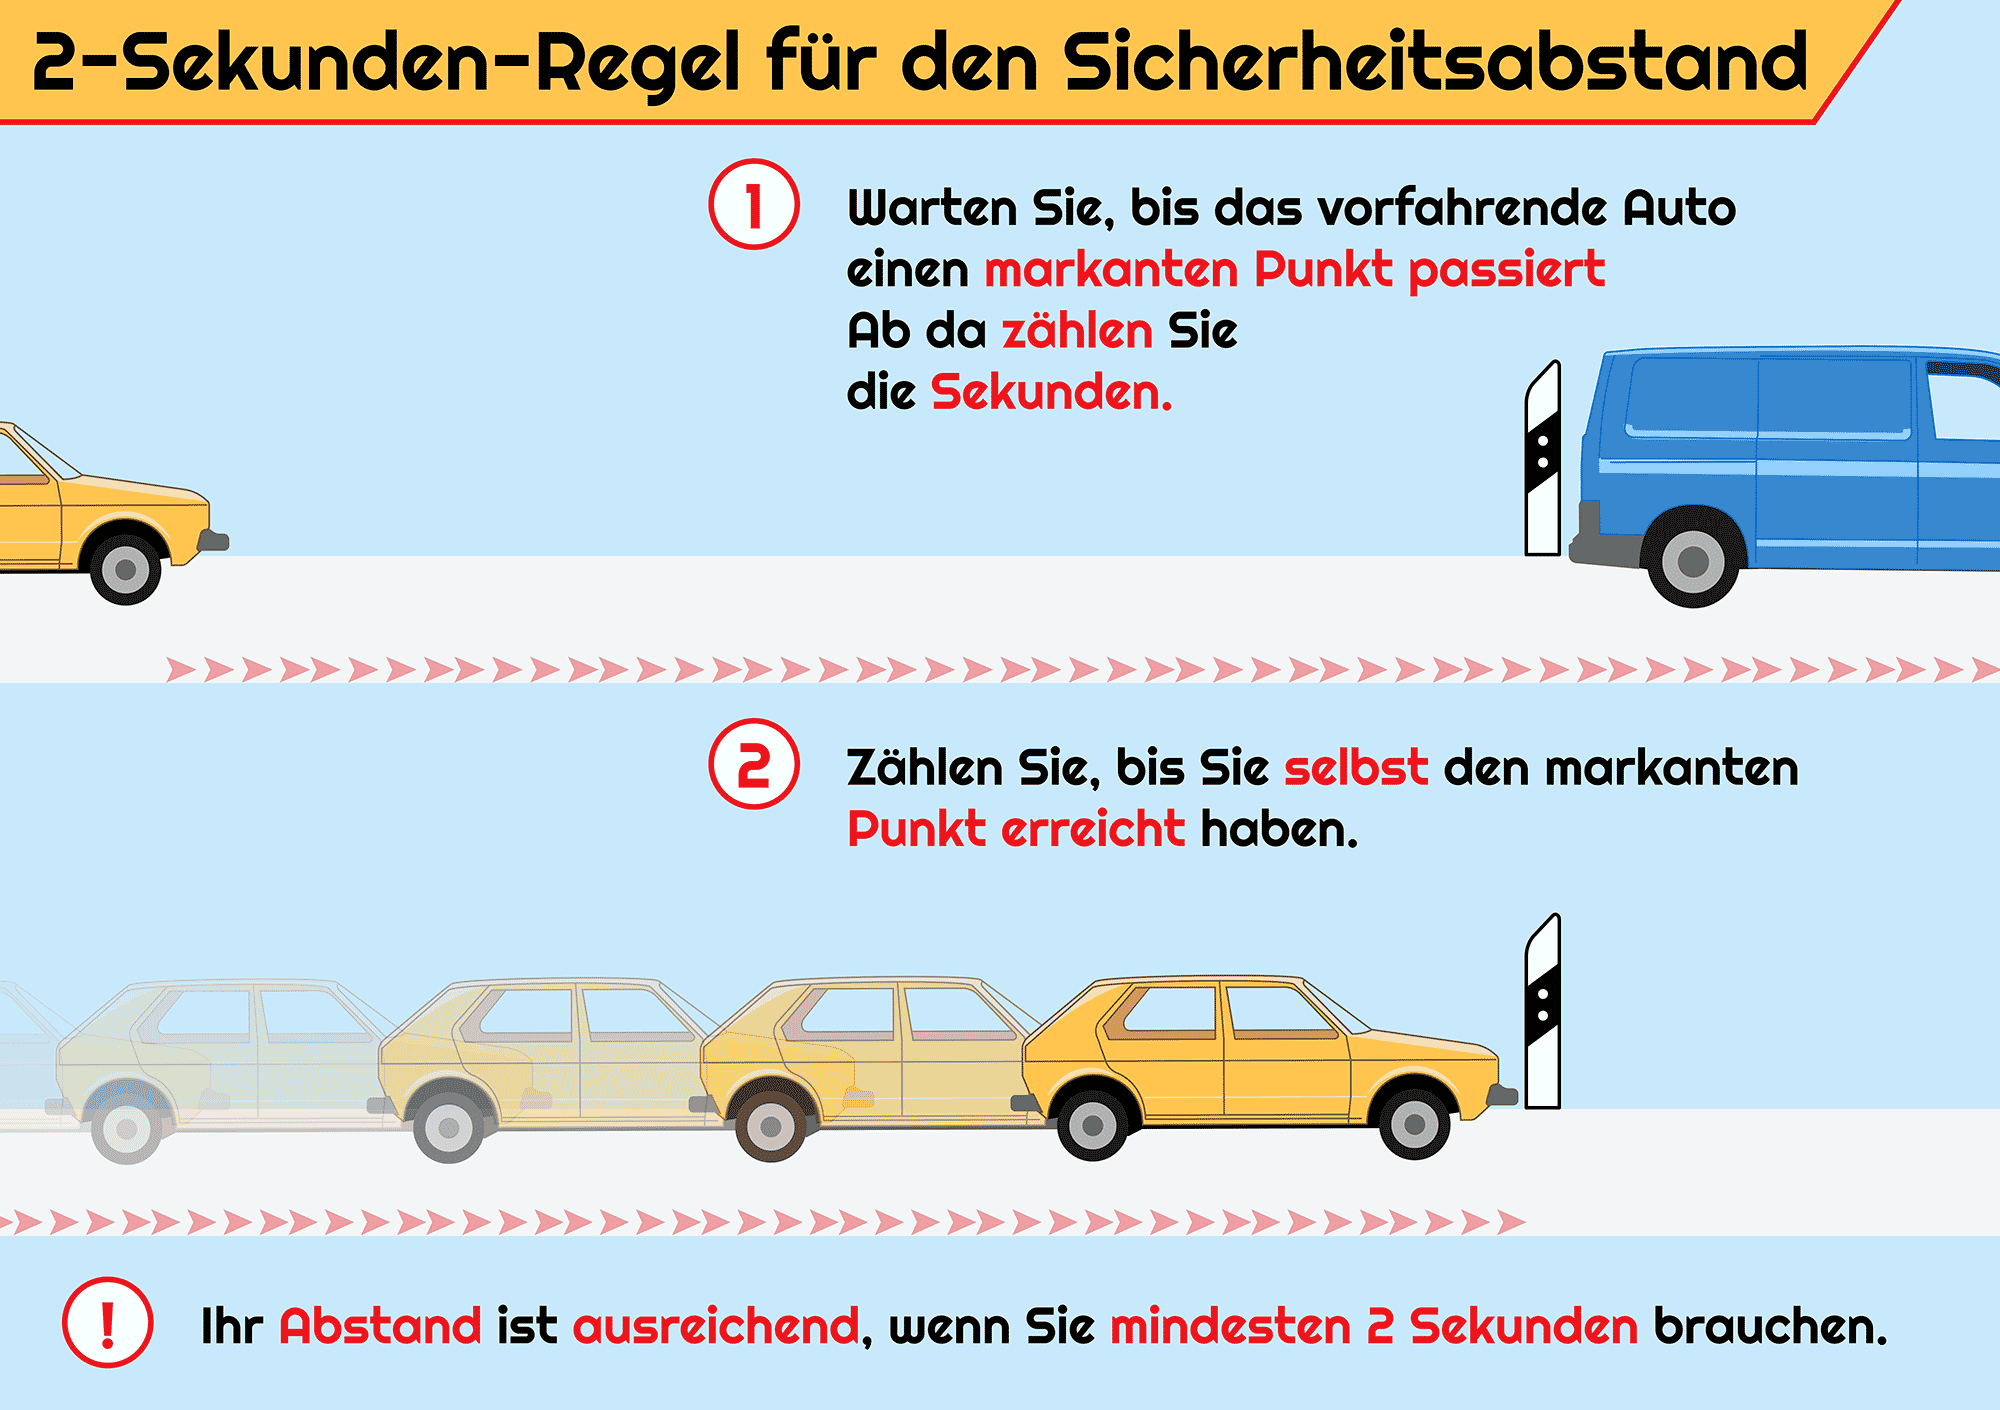 Welche strafe bekommt man wegen un erlaubten fahren - Deutschland